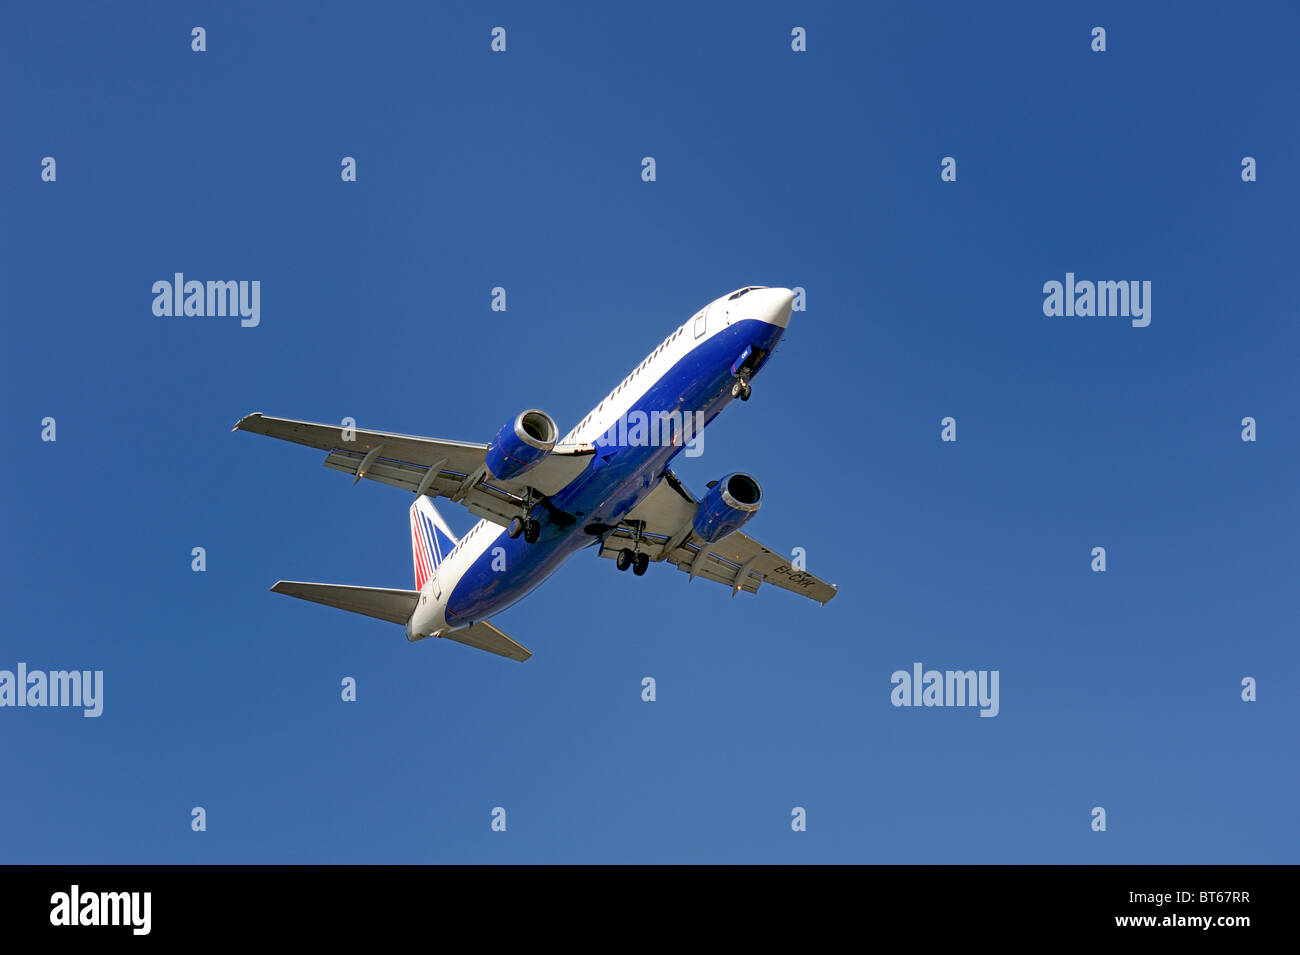 British Airways passenger jet coming into land Stock Photo